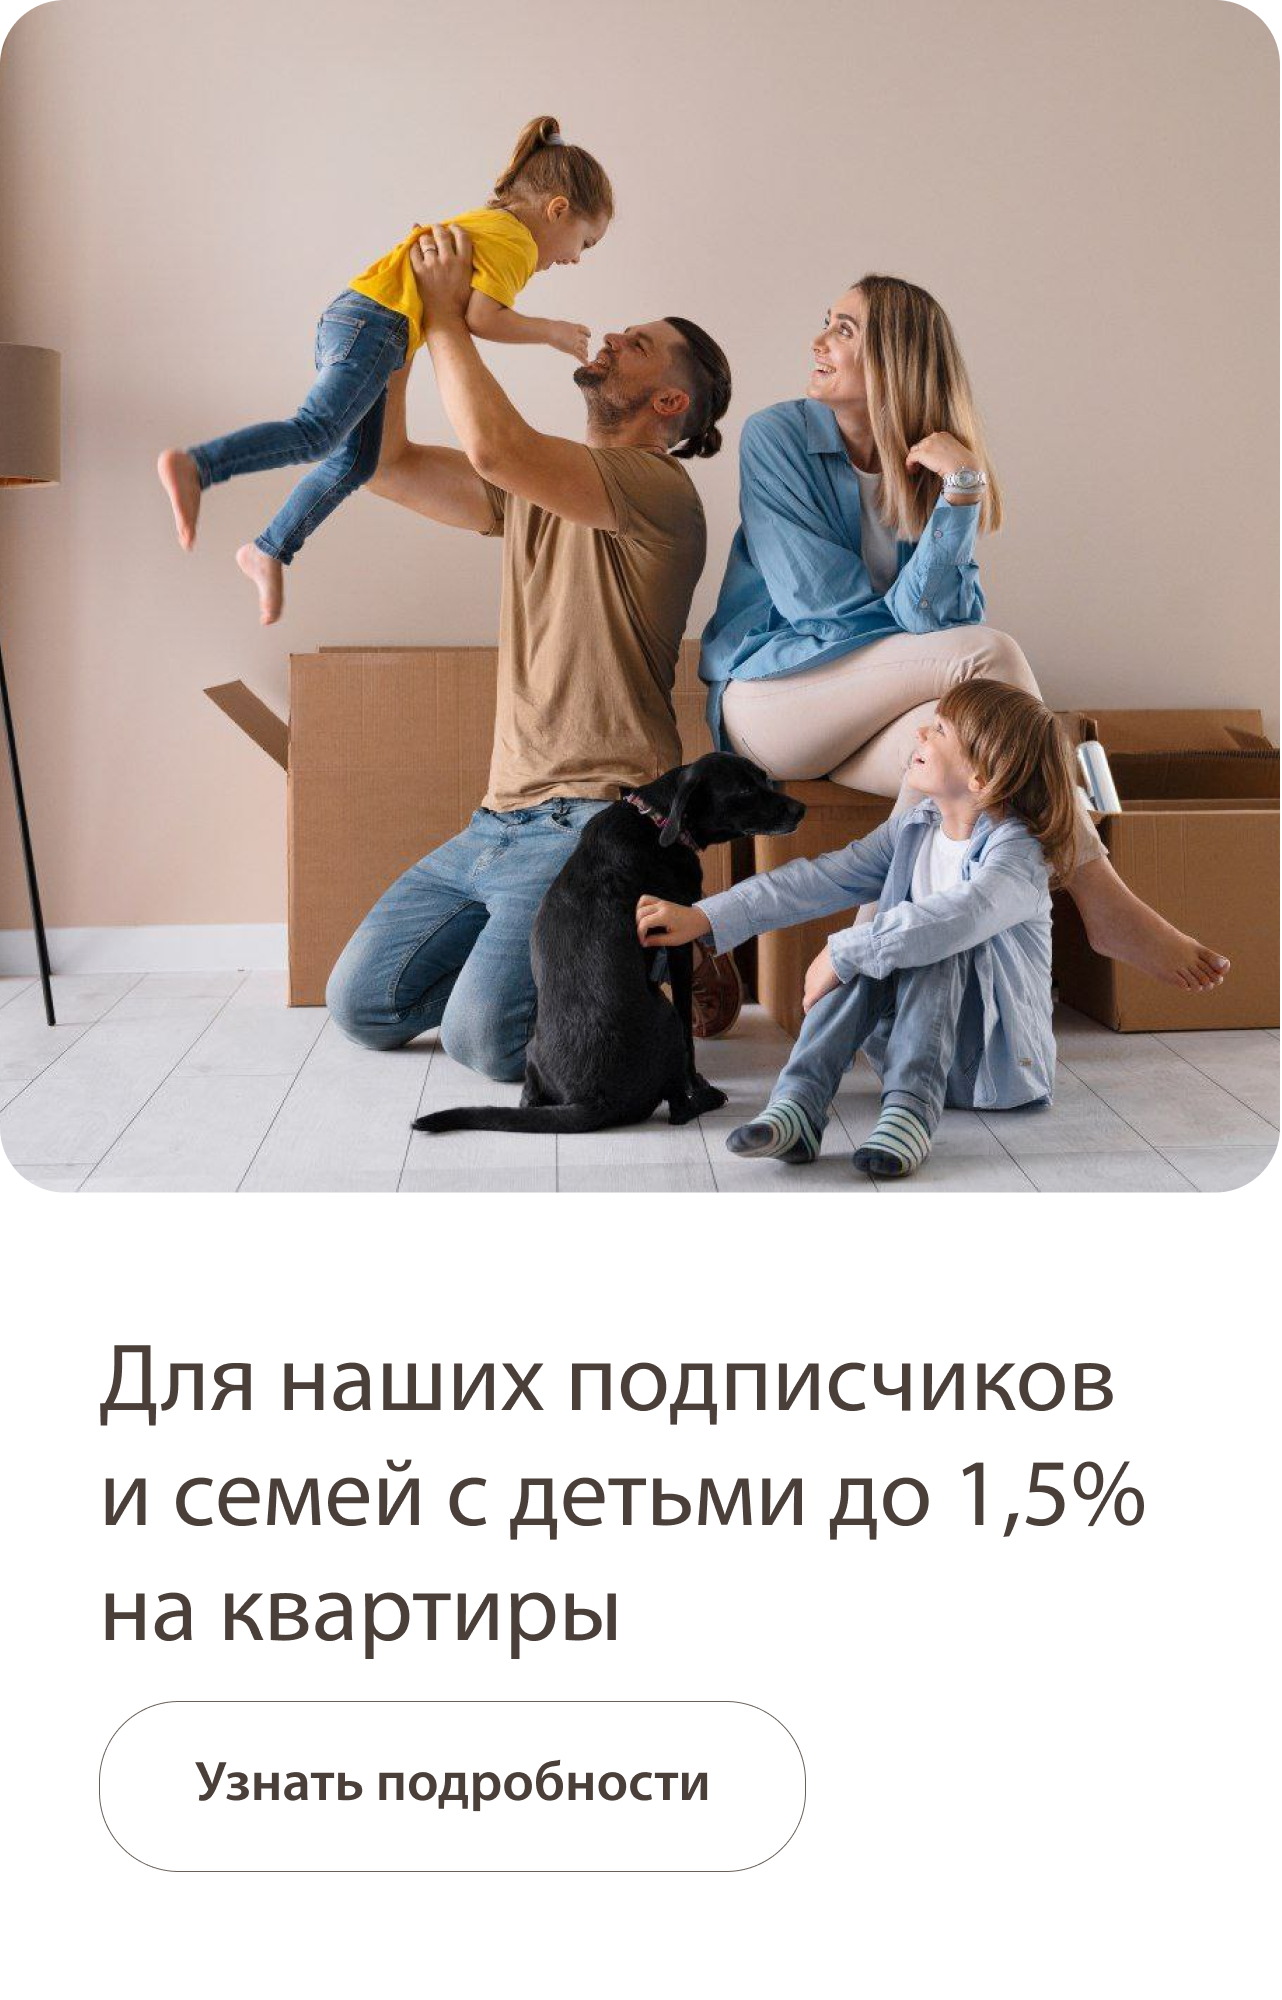 Для семей с детьми 2%